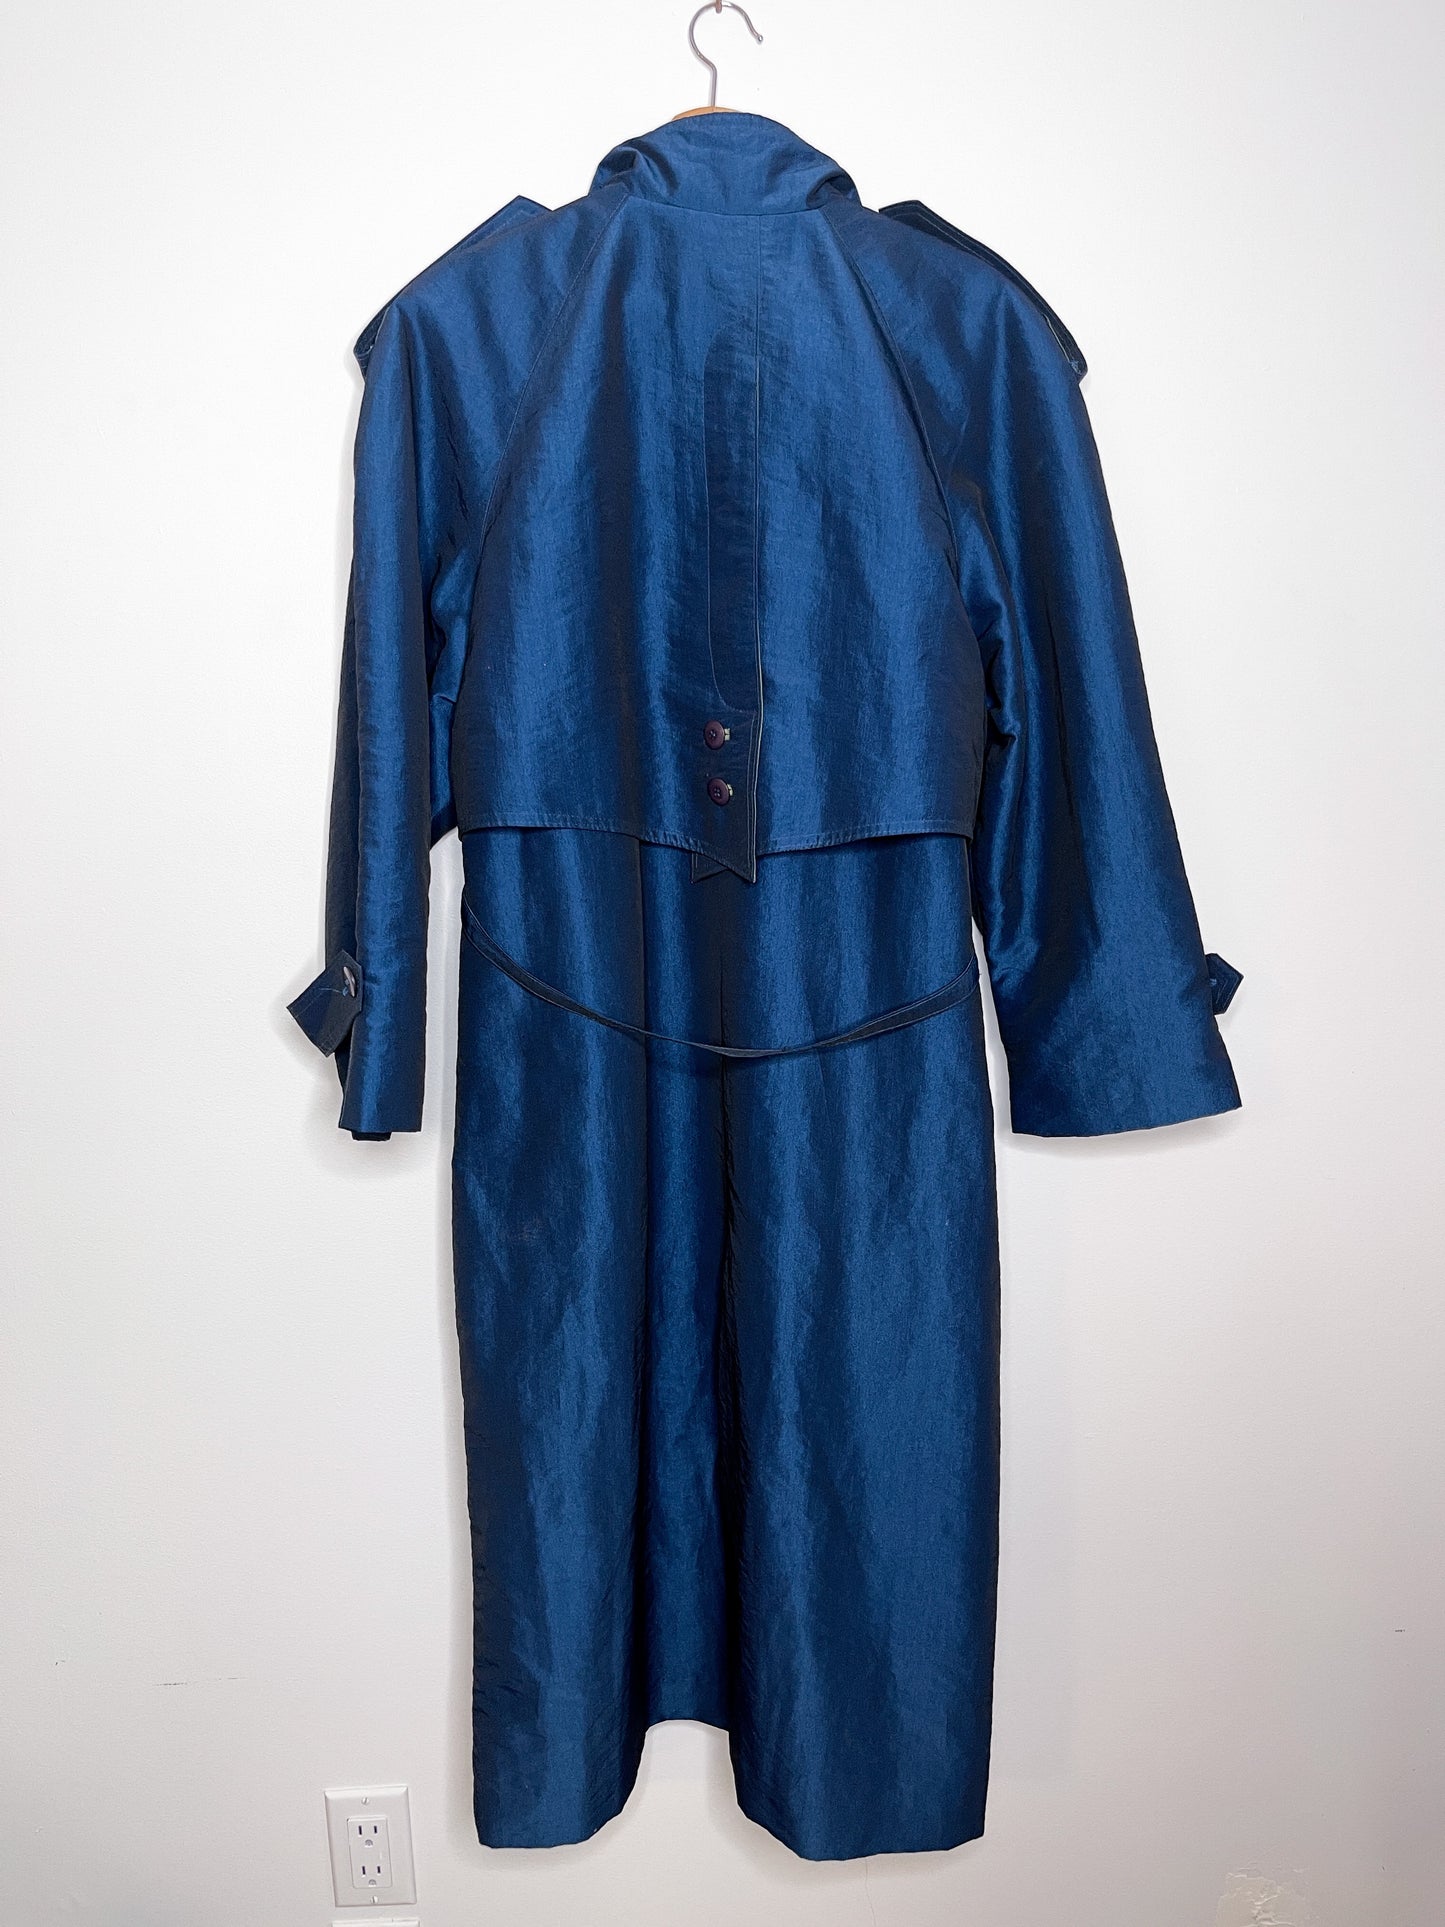 Vintage Collection Elegant Blue Trenchcoat